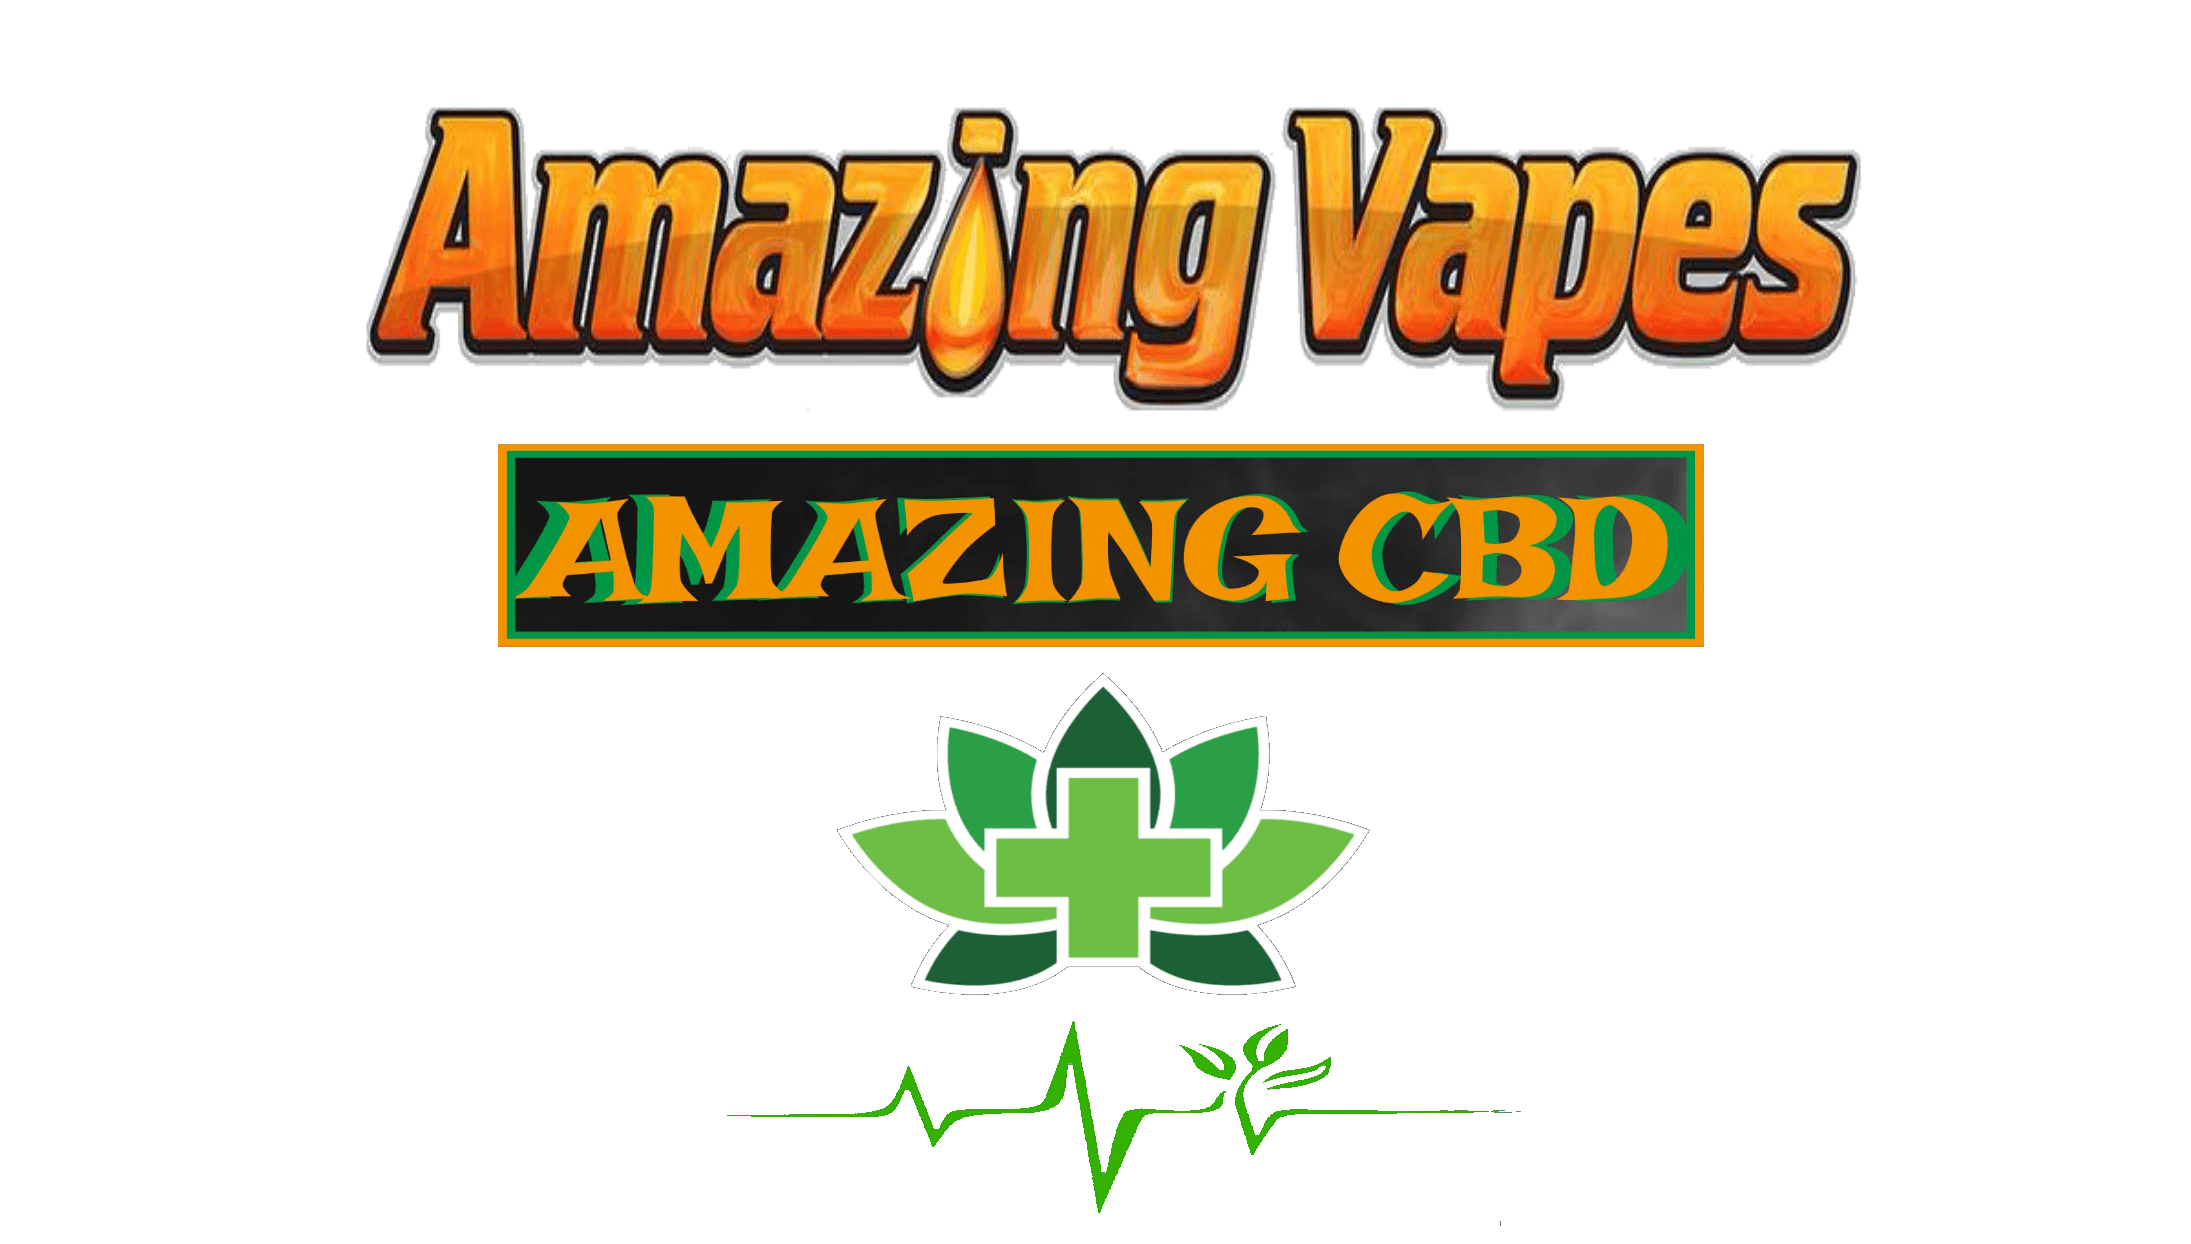 Vapes CBD Logo - Northeast Indiana Vape Shop and Lounge | Amazing Vapes / Amazing CBD ...